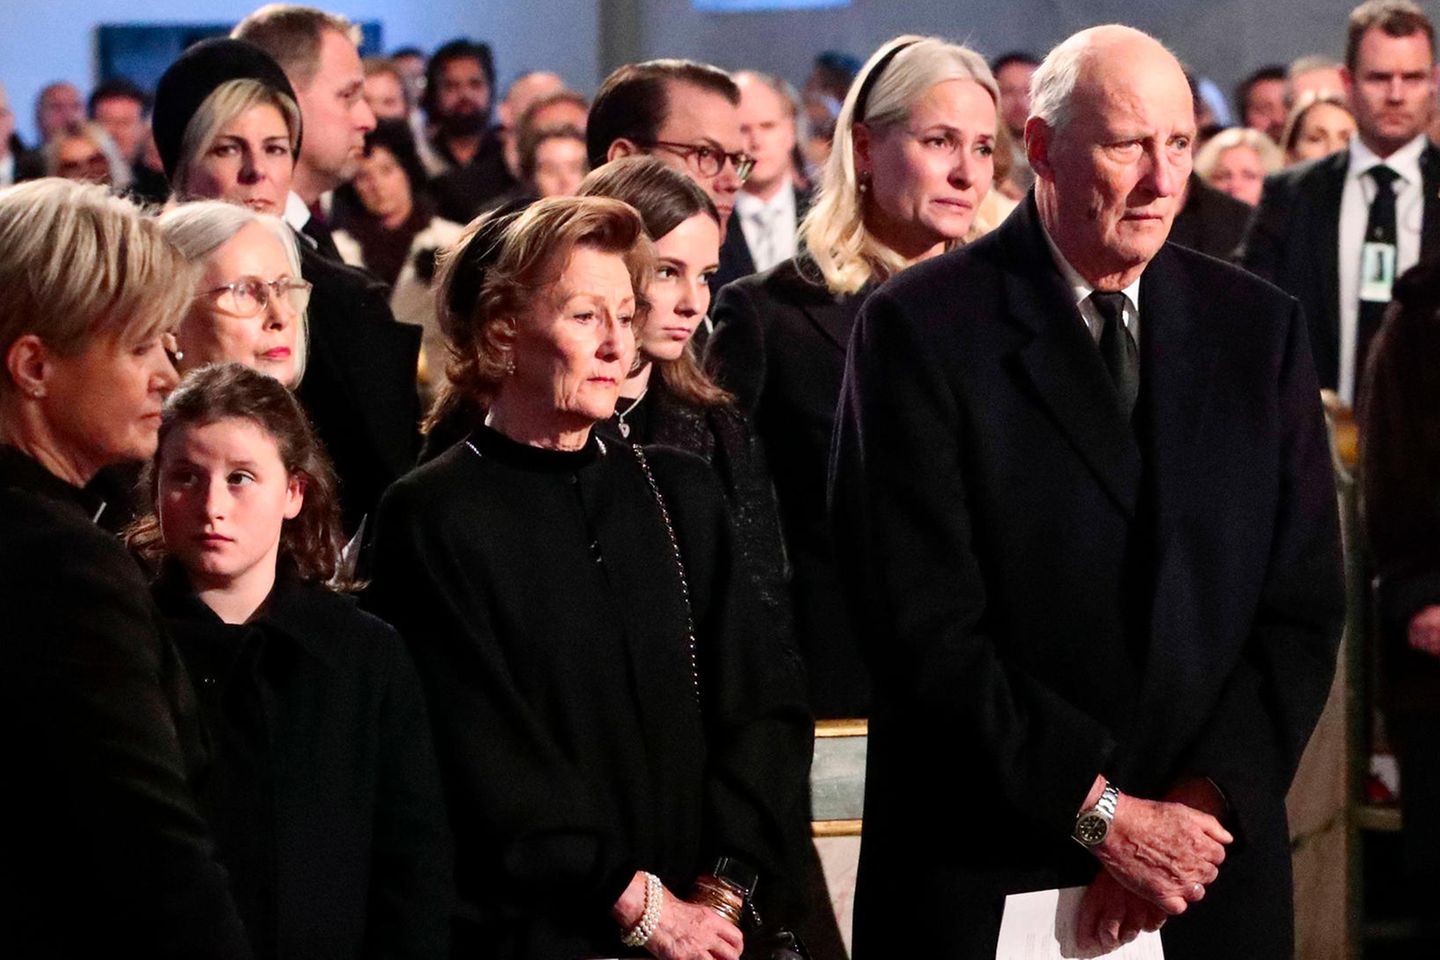 König Harald und die norwegische Königsfamilie auf der Trauerfeier für Ari Behn (†)